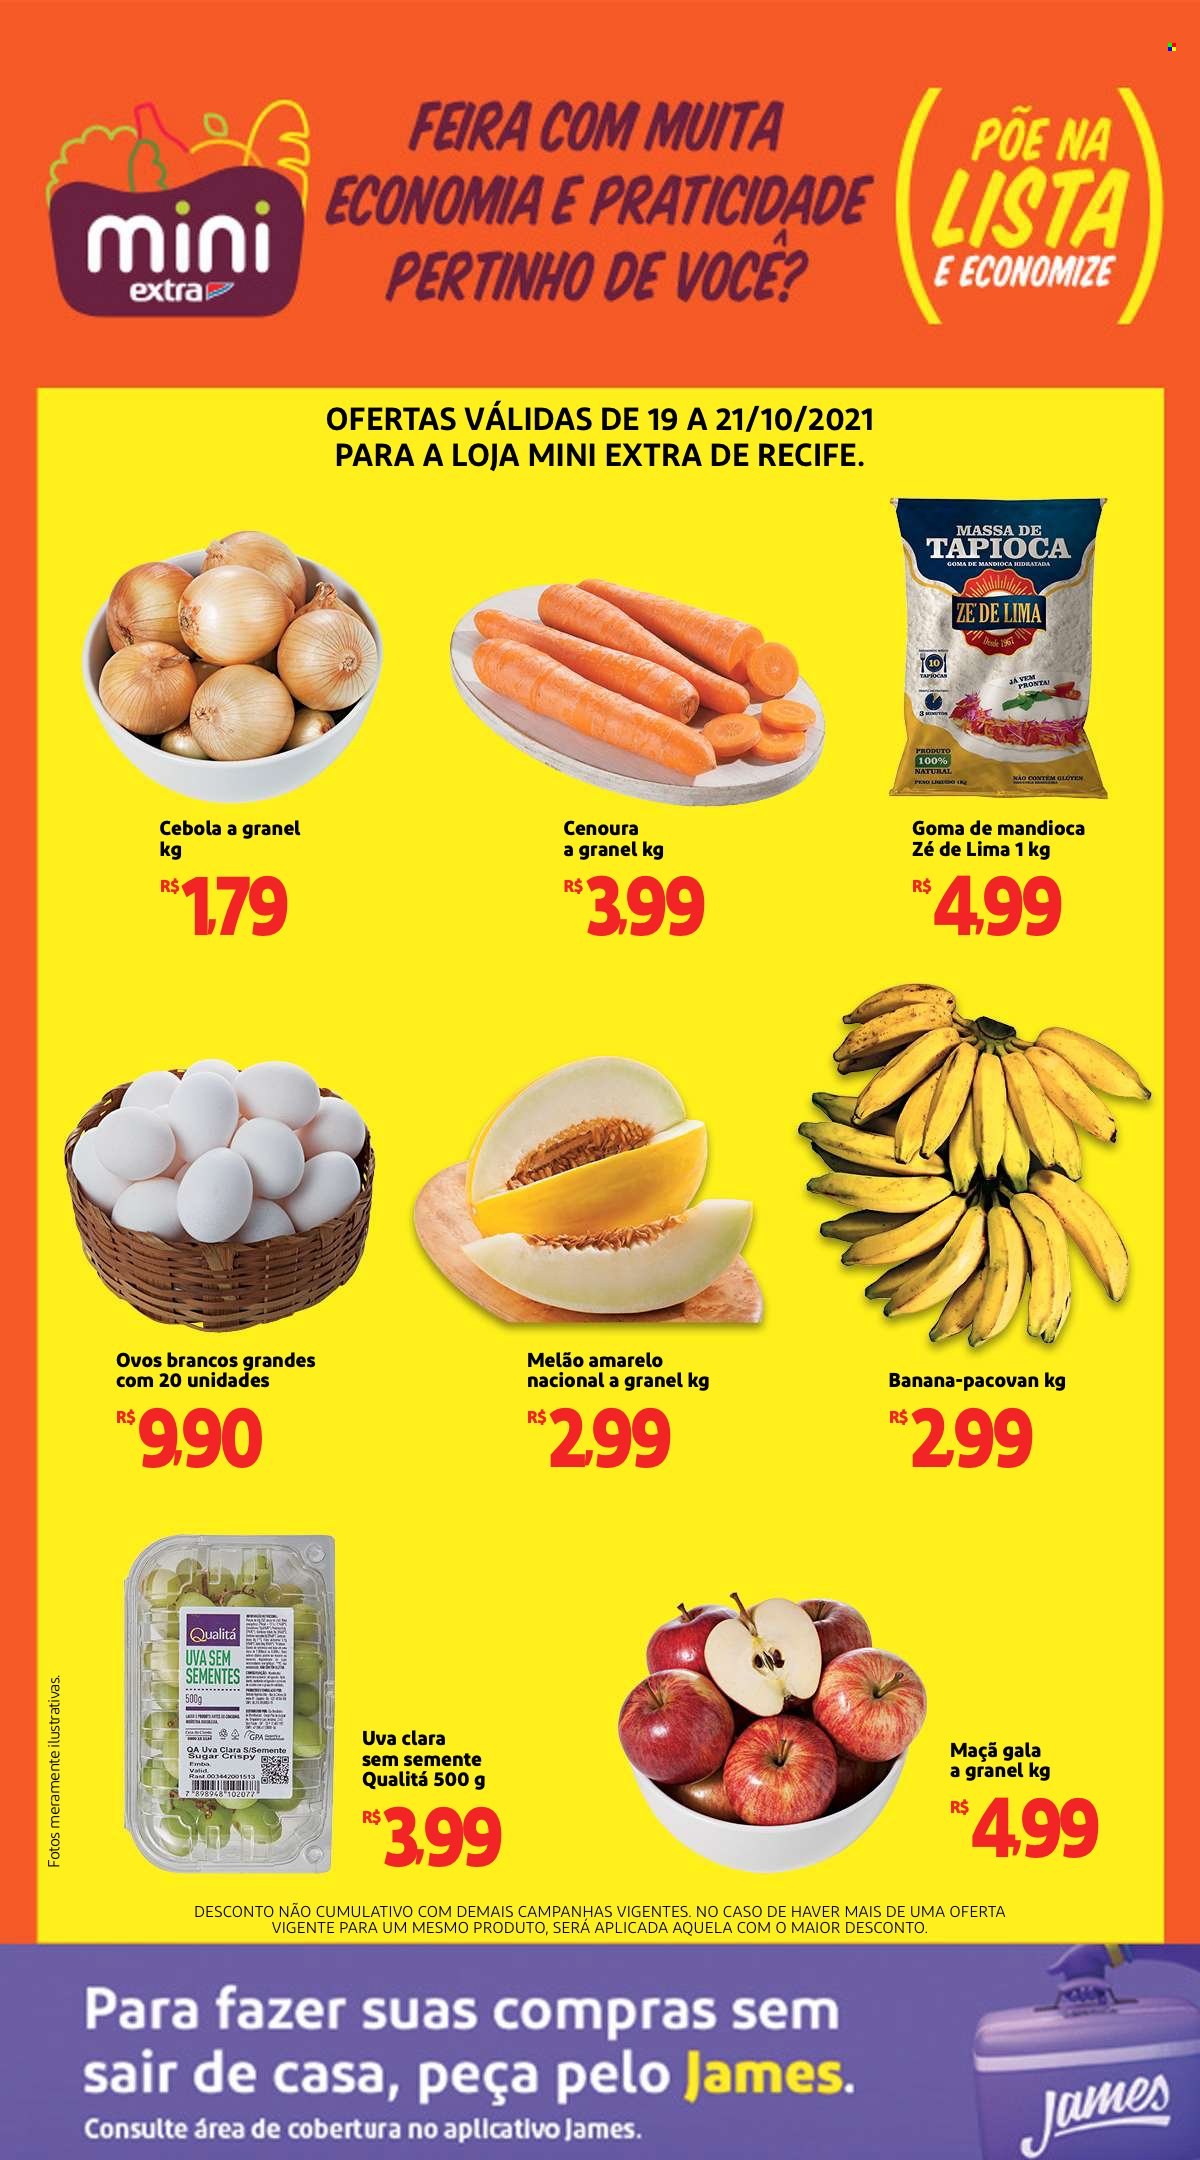 thumbnail - Folheto Mini Extra - 19/10/2021 - 21/10/2021 - Produtos em promoção - banana, maçã, melão, uva, melão amarelo, lima, cebola, cenoura, ovos brancos, tapioca. Página 1.